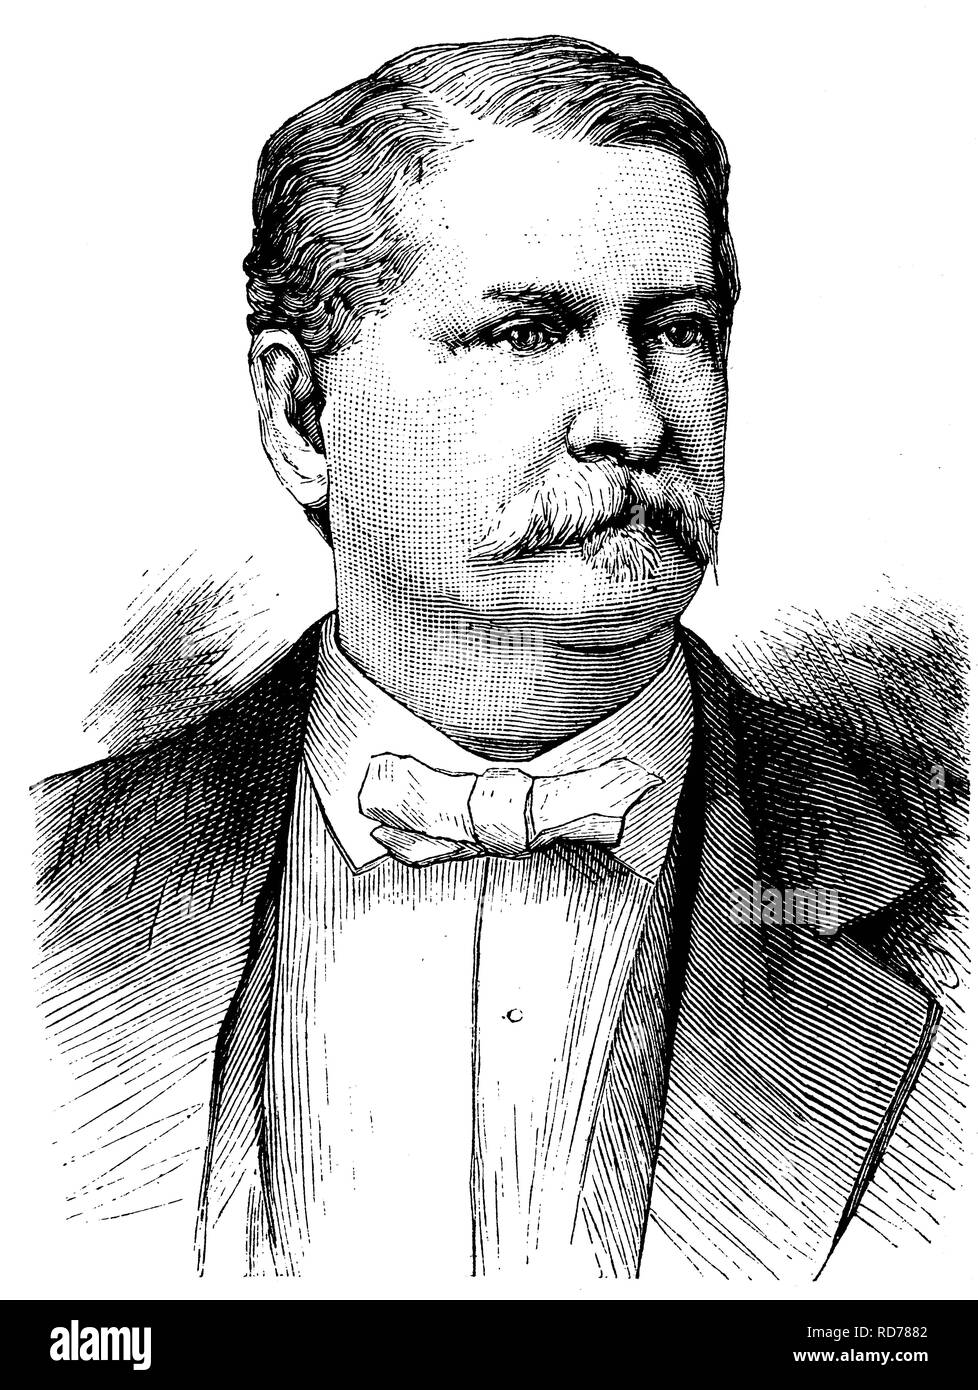 Winfield Scott Hancock, 1824-1886, Major-général de l'armée américaine, candidat démocrate pour les élections présidentielles aux Etats-Unis Banque D'Images